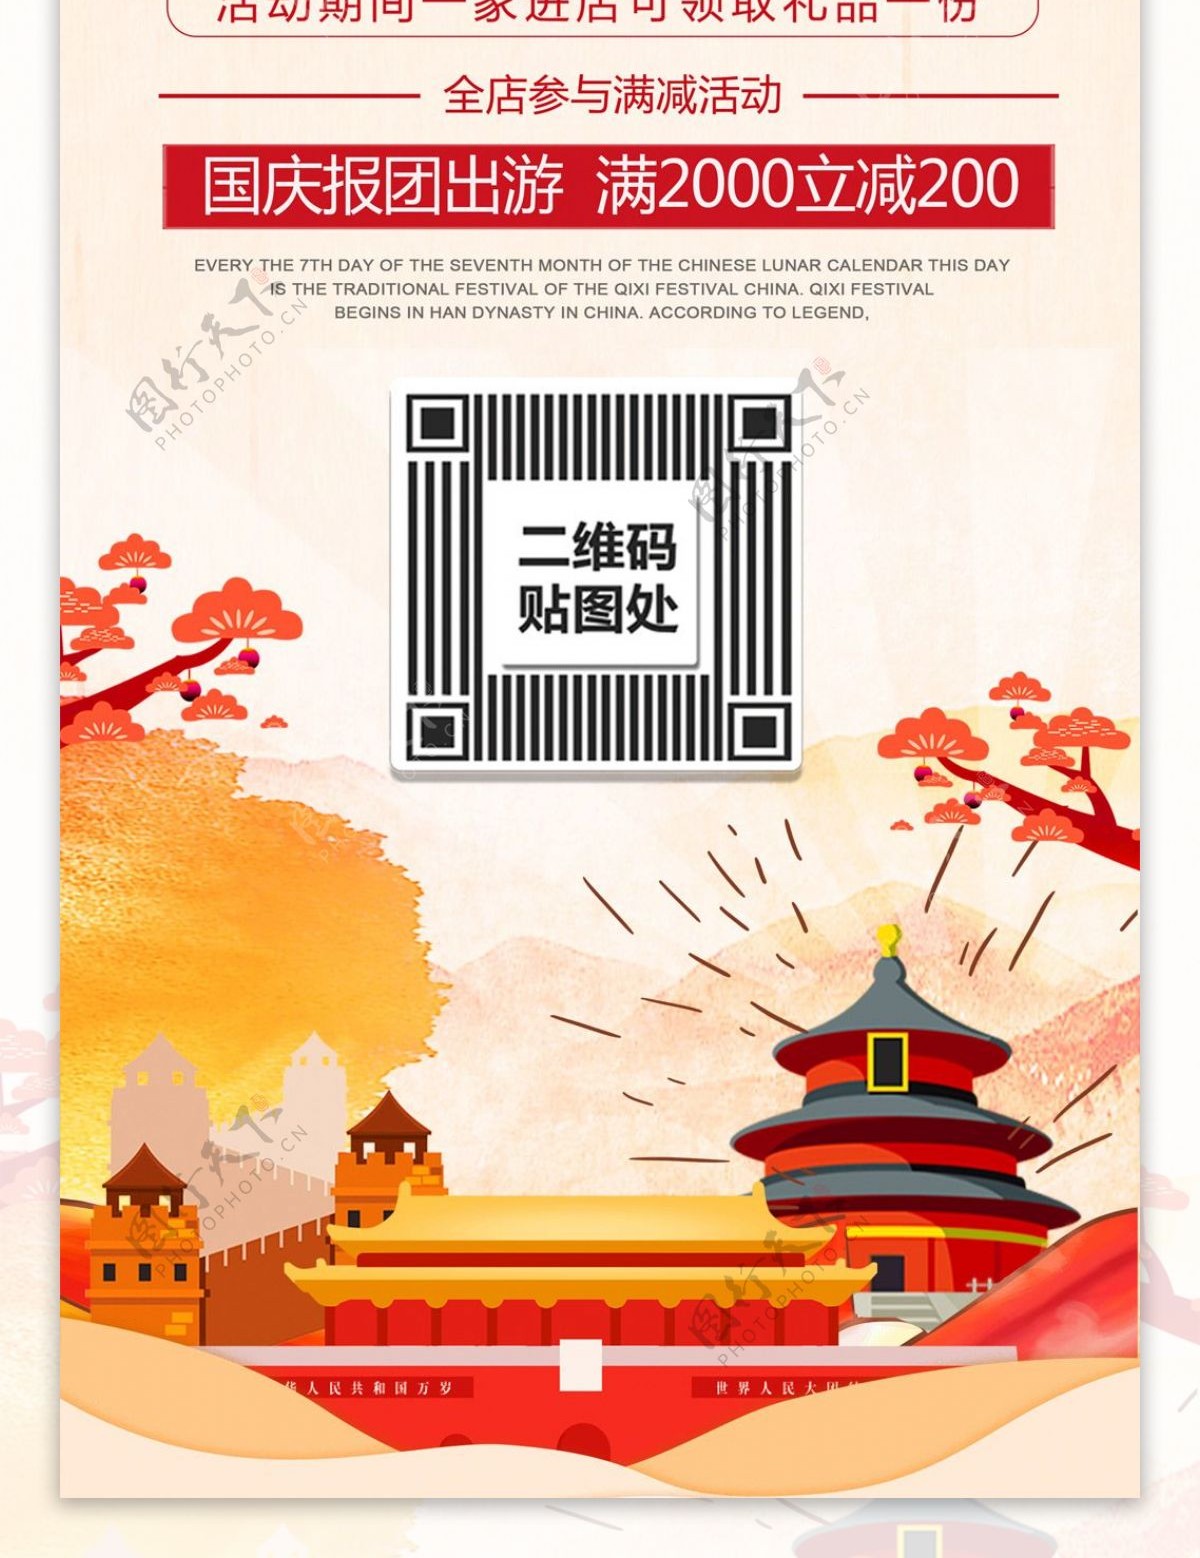 红色中国风十一国庆出游季旅行促销展架